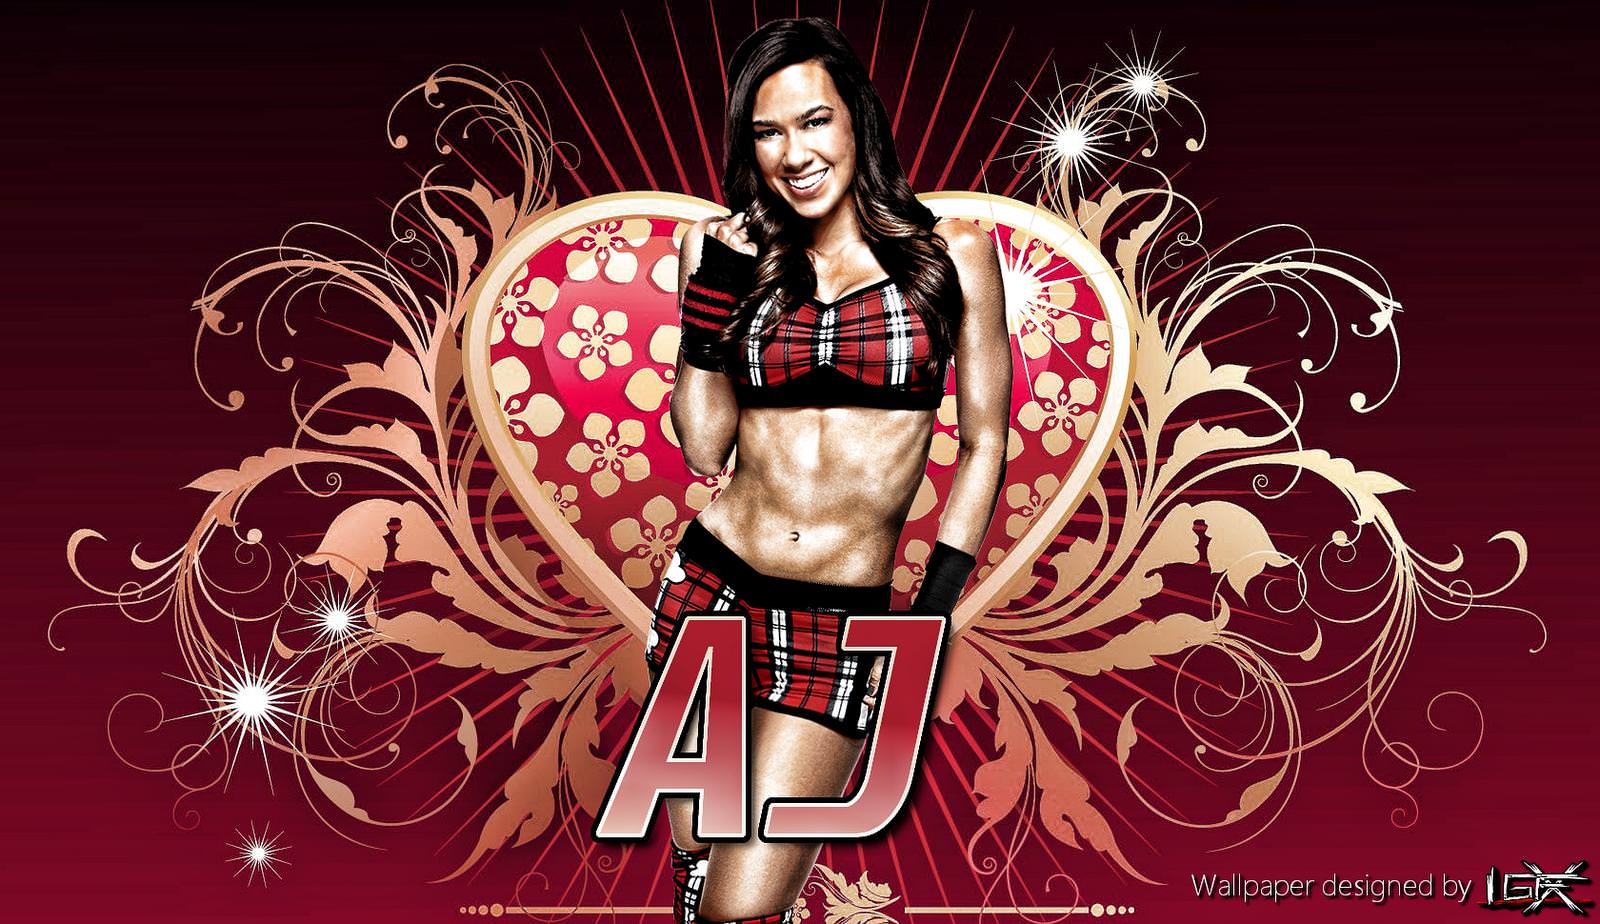 WWE AJ Lee HD Wallpaper 2012